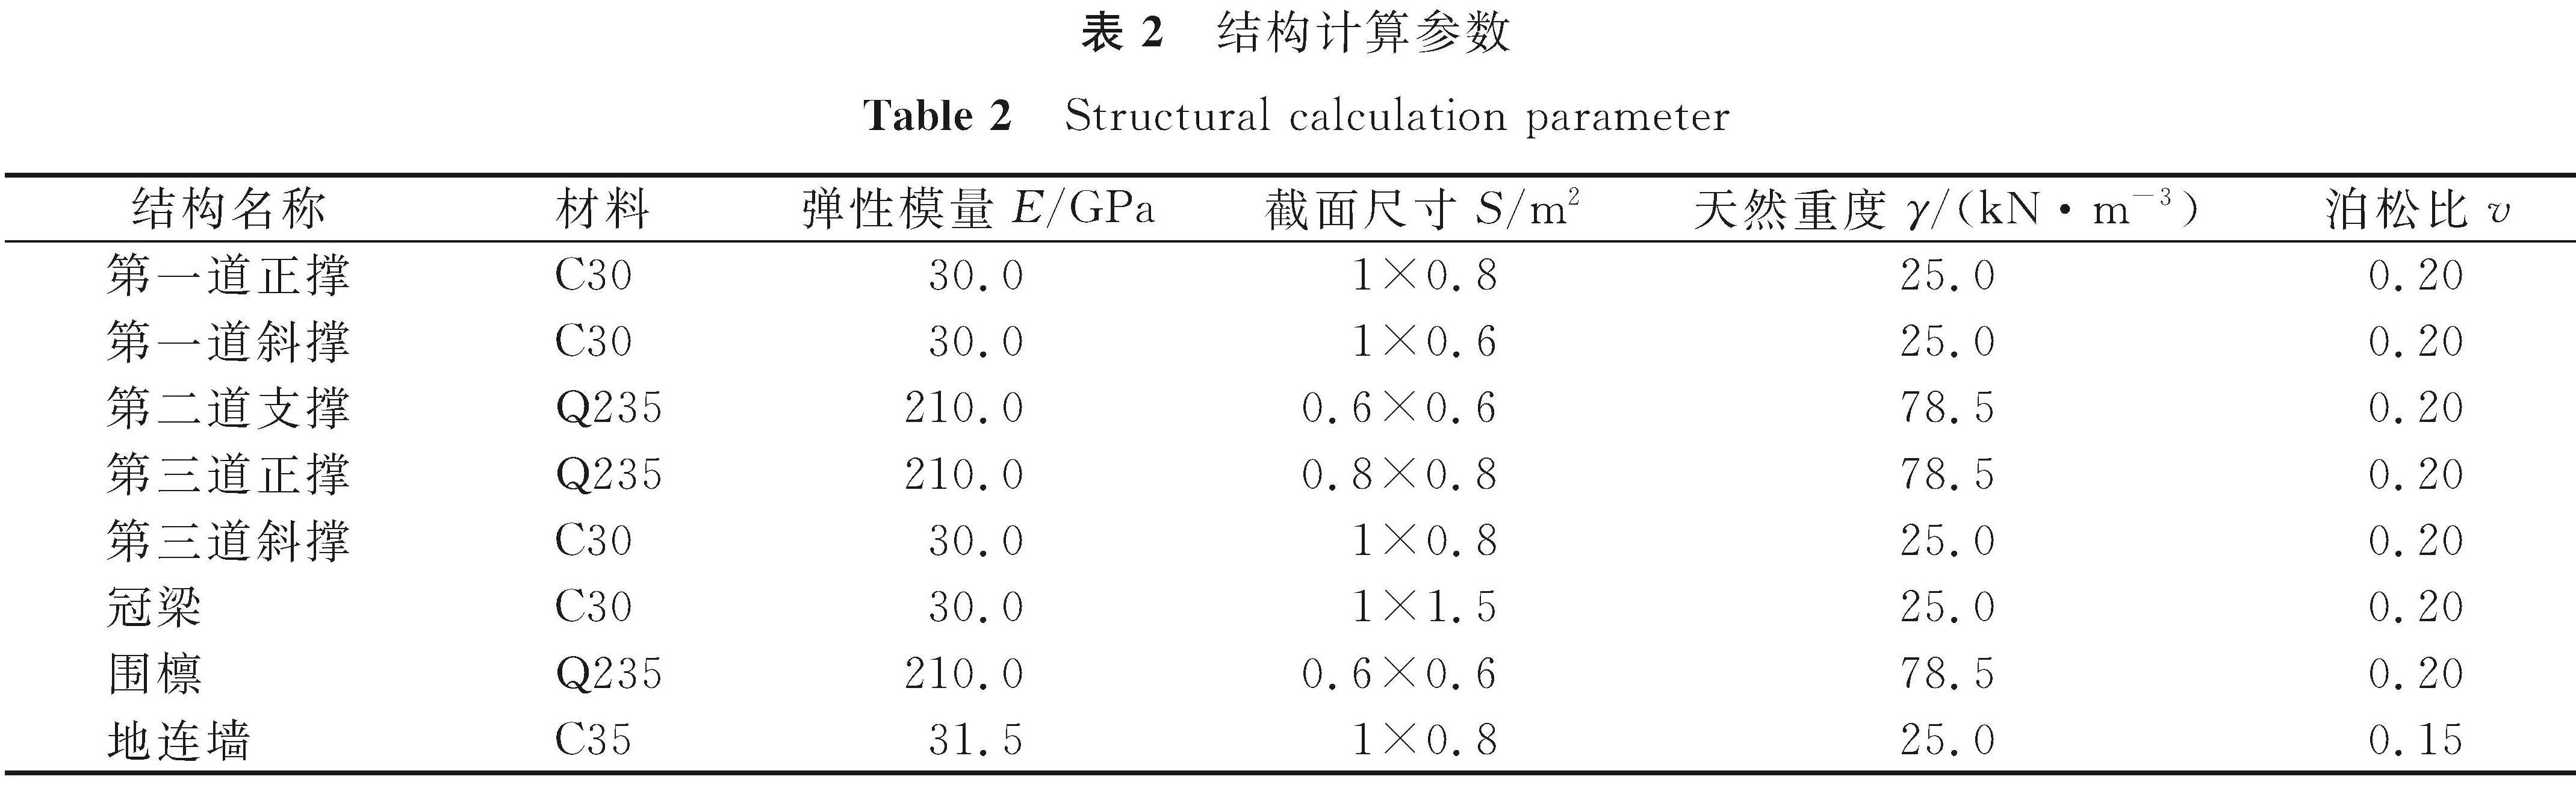 表2 结构计算参数<br/>Table 2 Structural calculation parameter